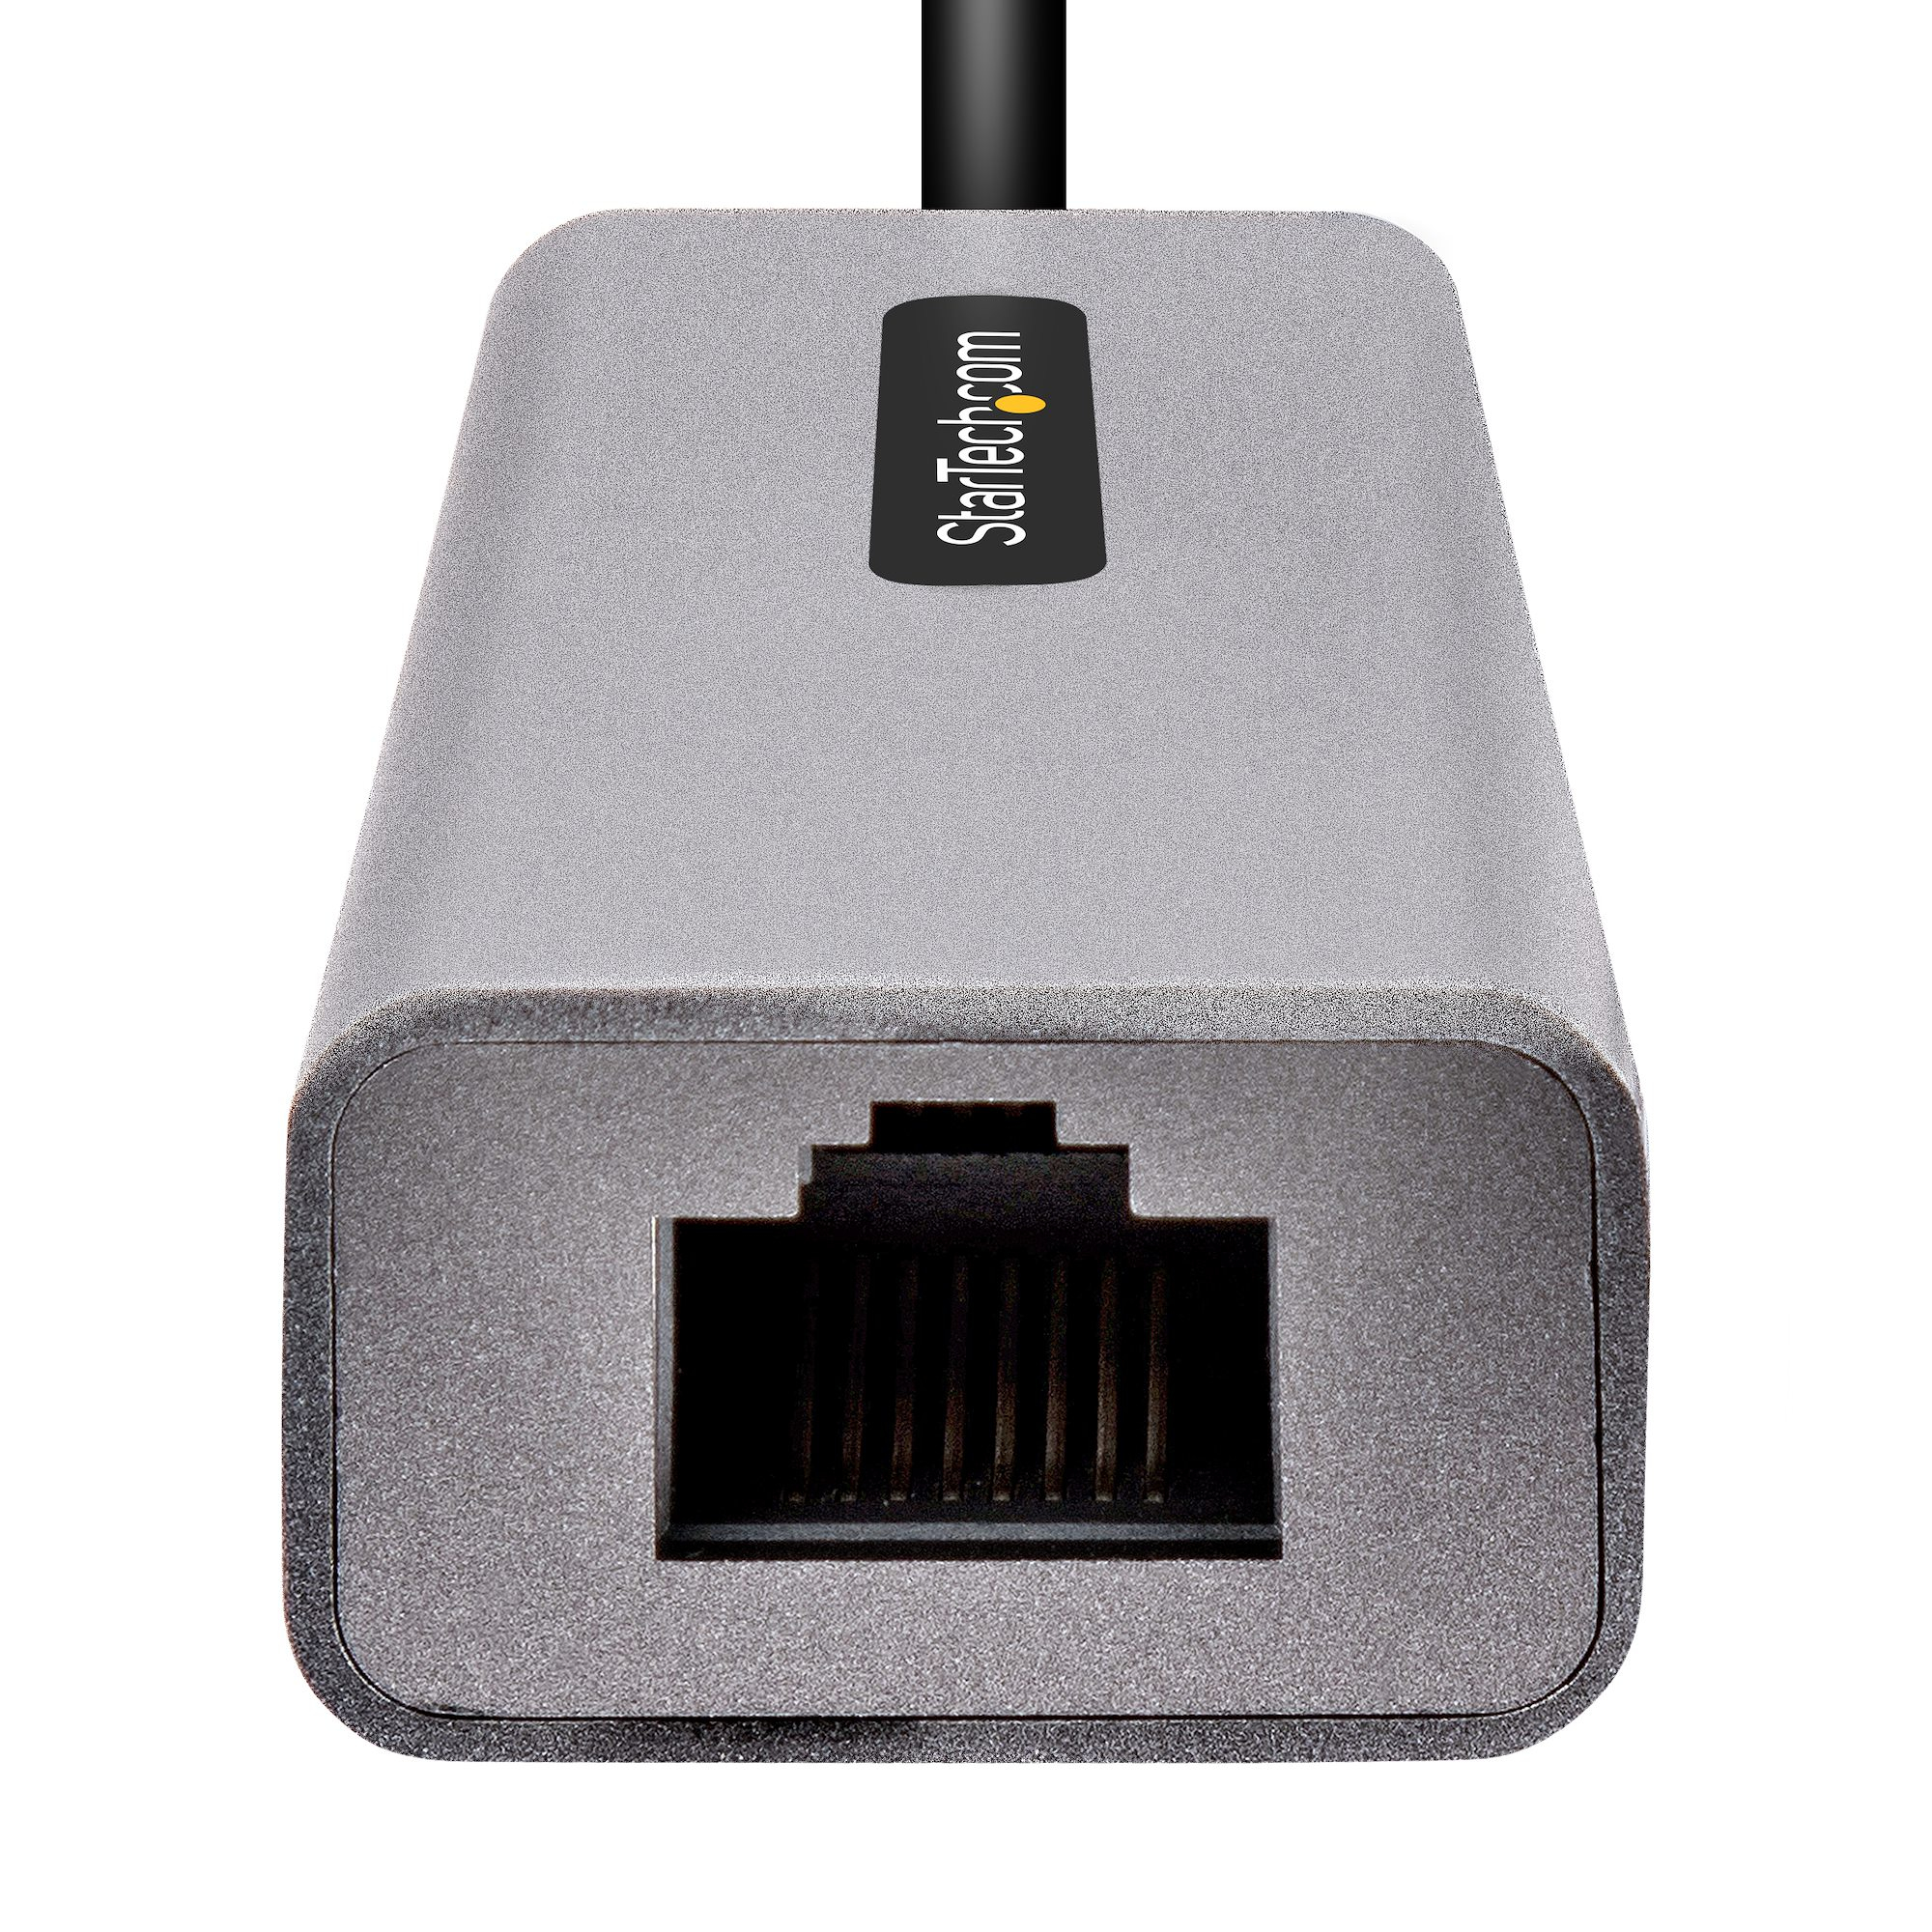 Adaptateur Ethernet USB C vers RJ45 Adaptateur réseau LAN Ethernet Gigabit